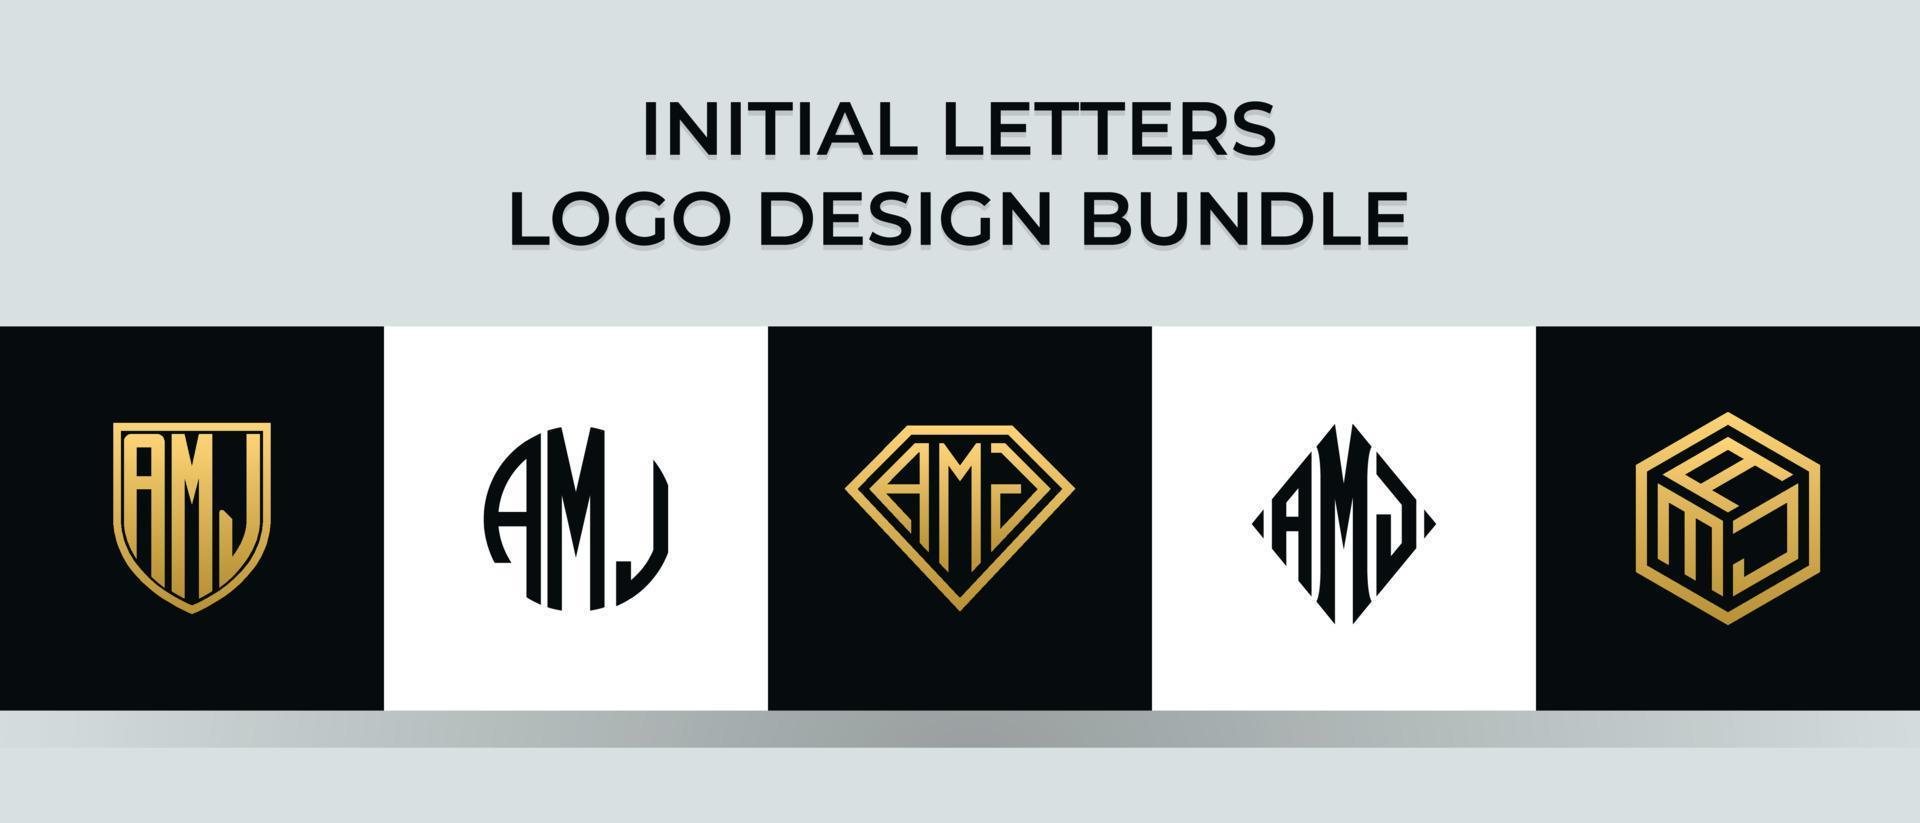 Anfangsbuchstaben amj Logo Designs Bundle vektor